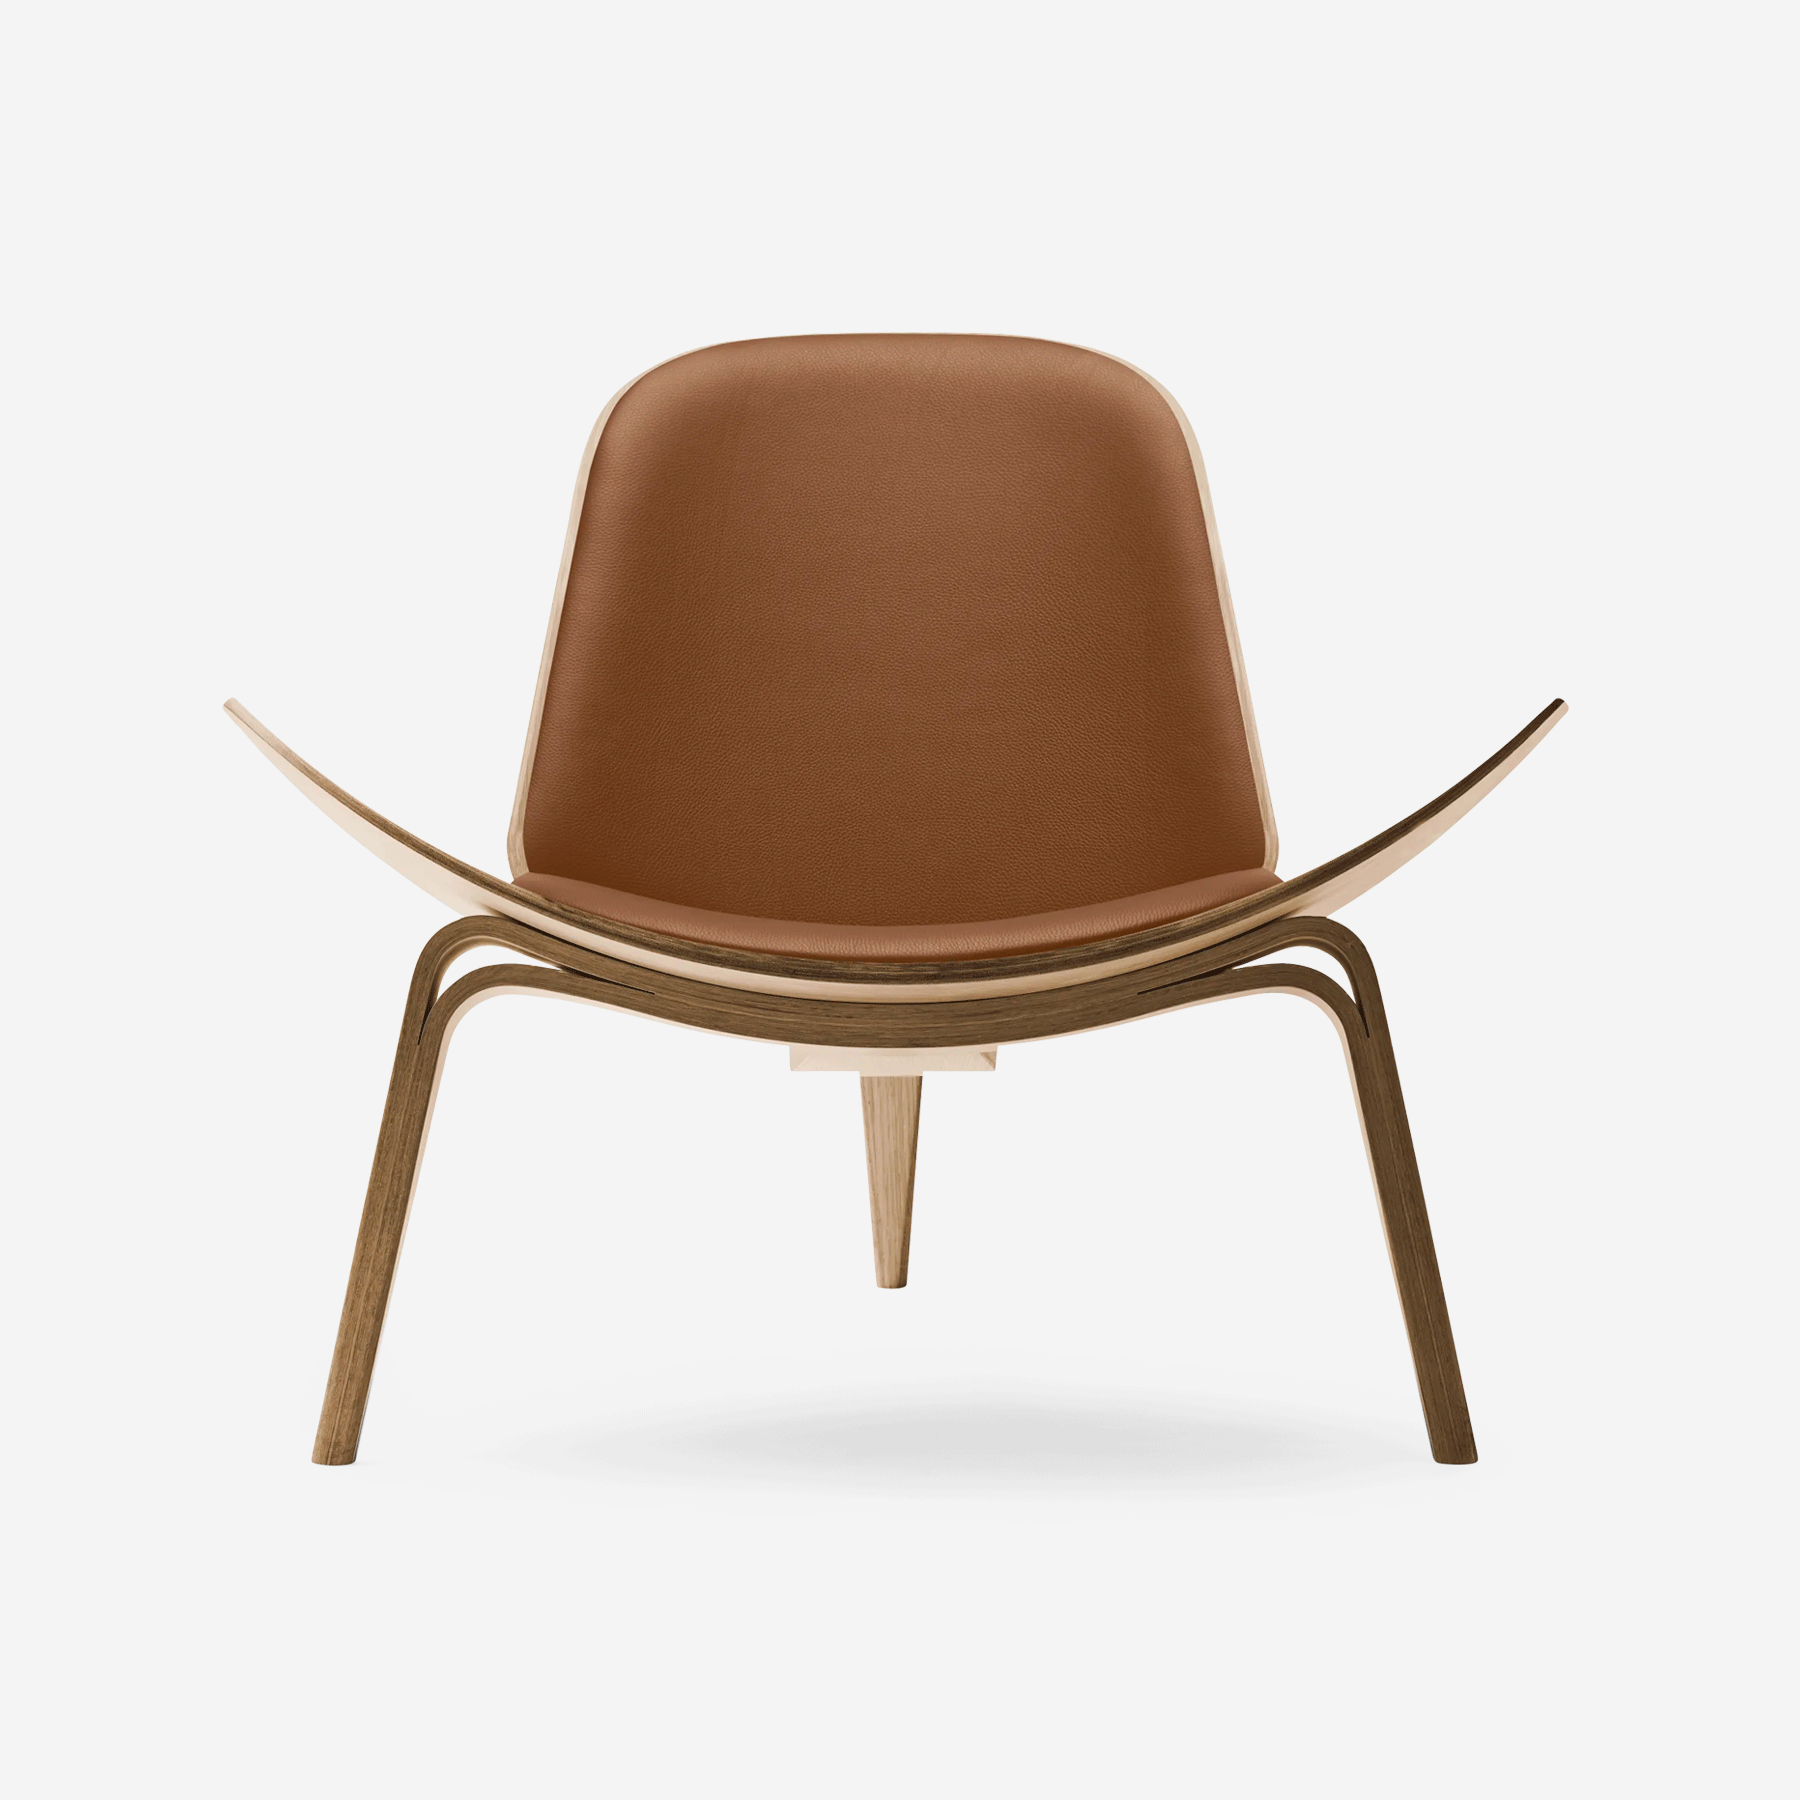 CH07 Shell Chair, Oiled Oak